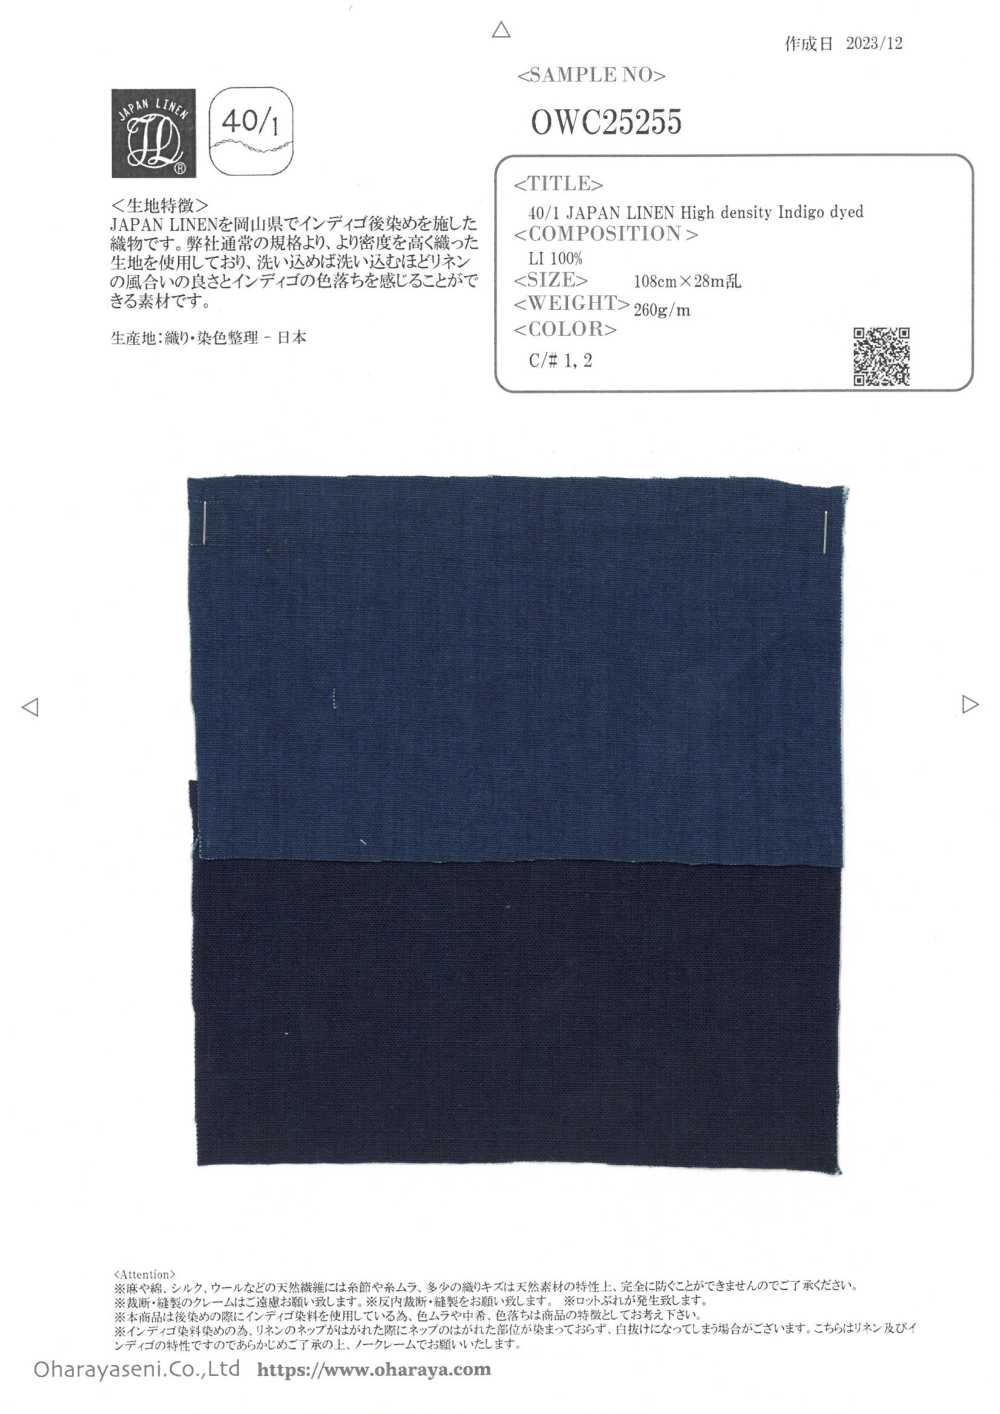 OWC25255 40/1 JAPAN LINEN Hochdichter, Indigogefärbter Stoff[Textilgewebe] Oharayaseni